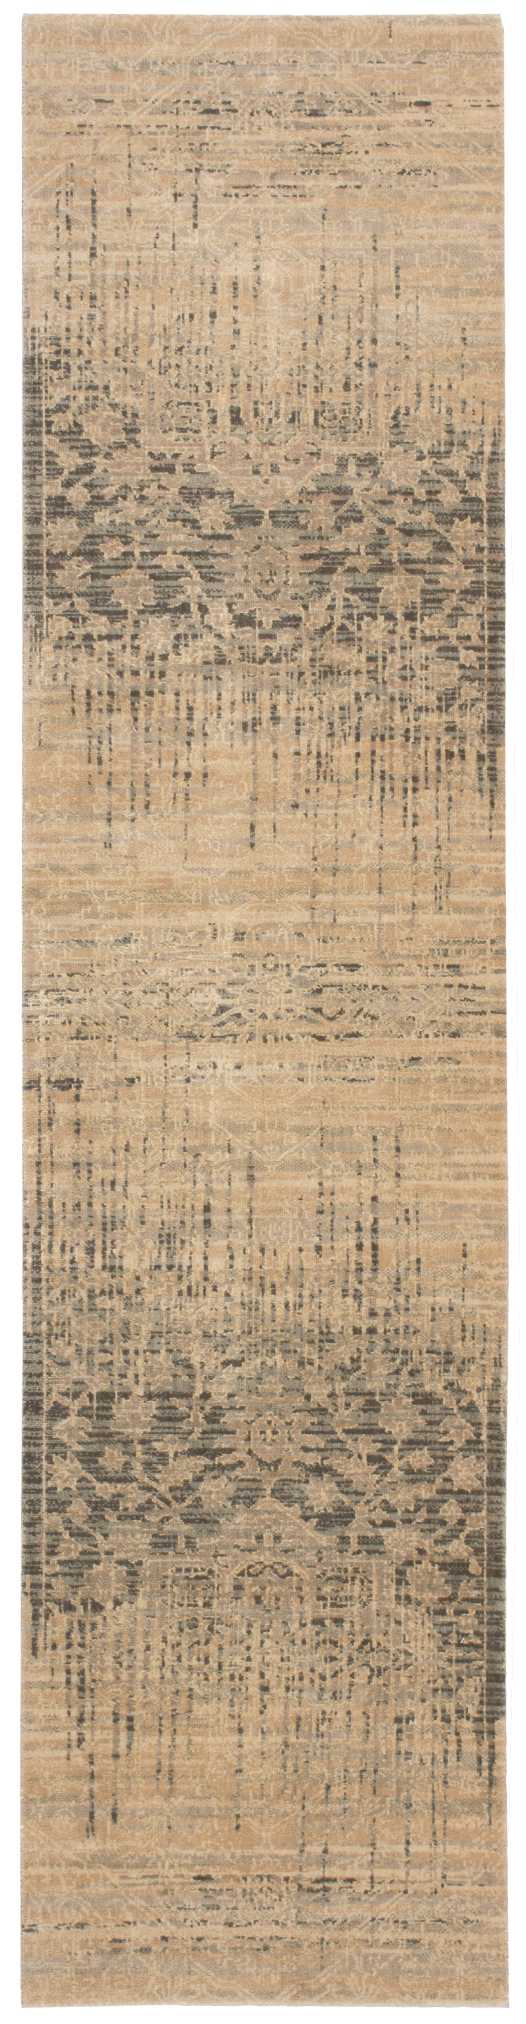 silk elements beige rug by nourison nsn 099446188601 2